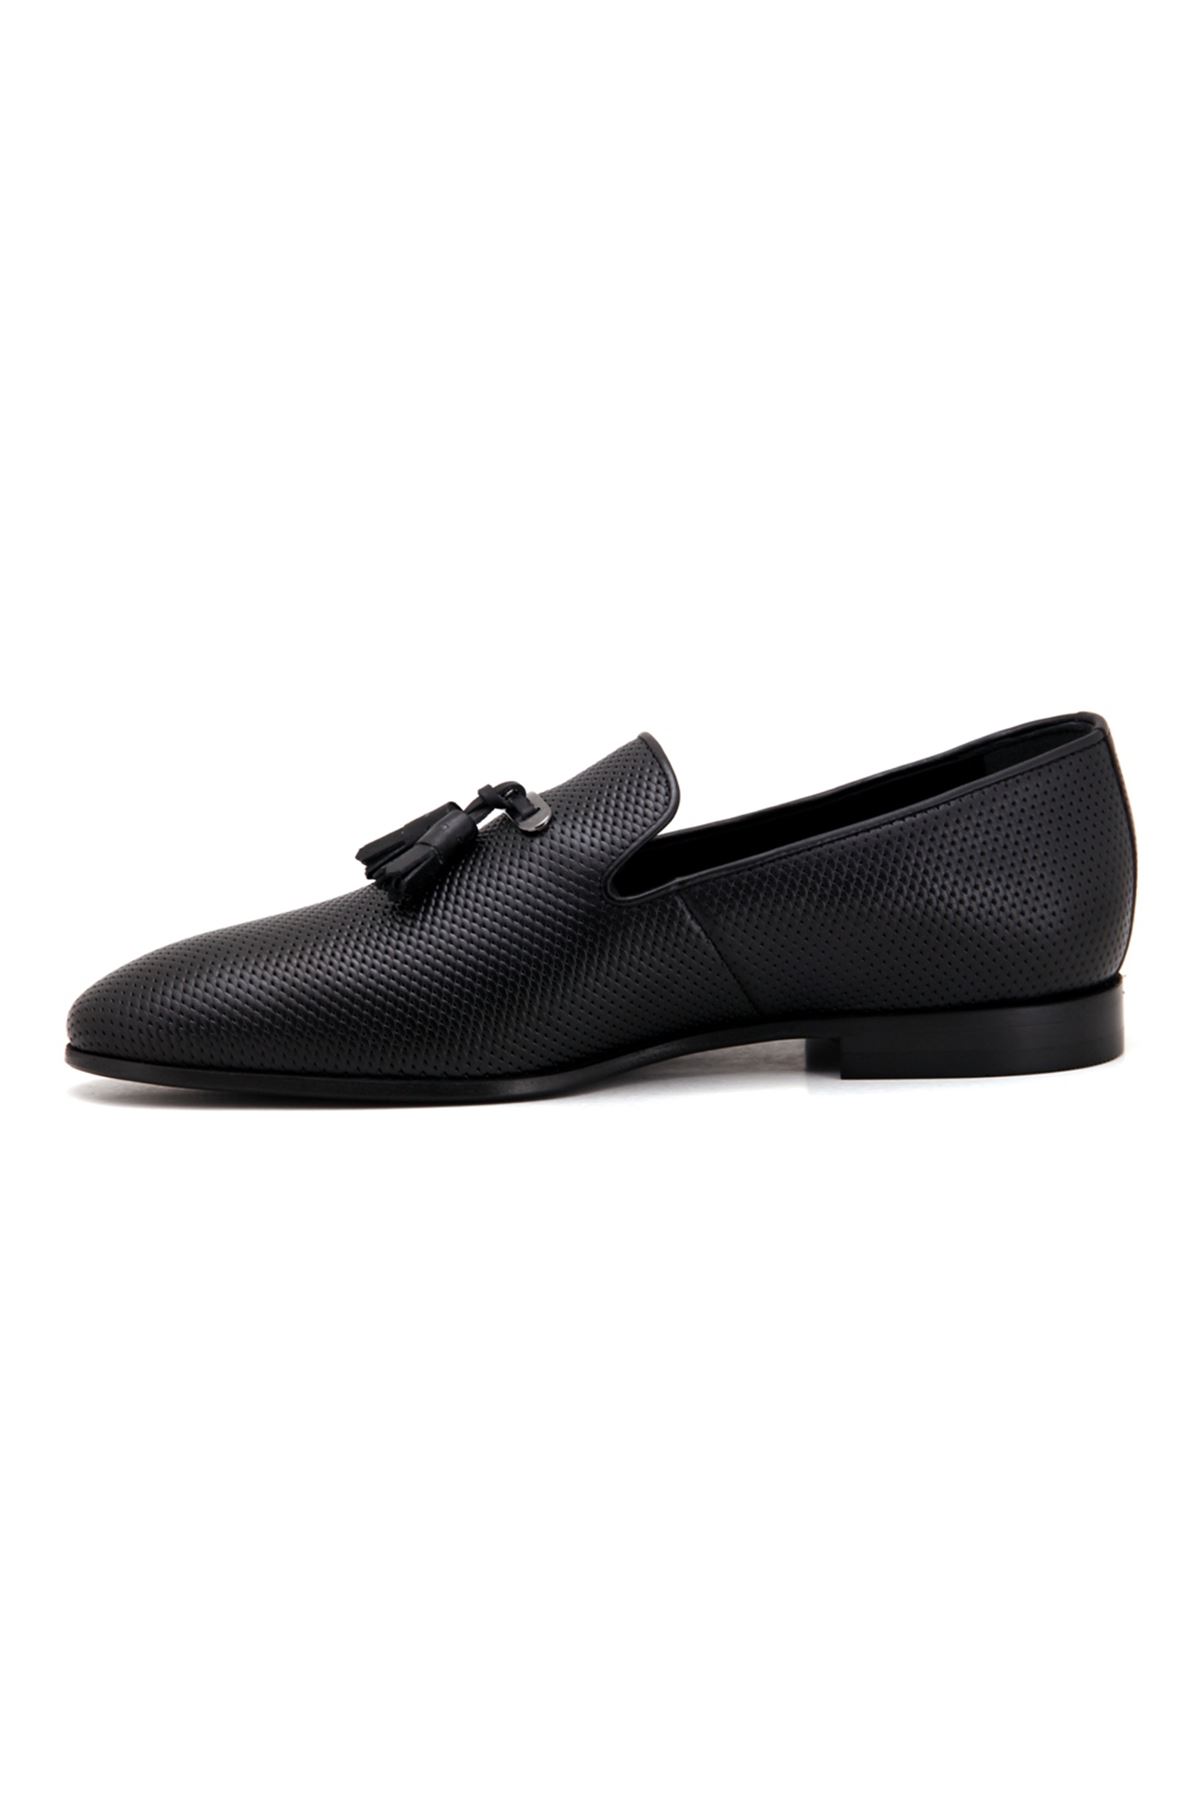 3324 Libero Klasik Erkek Ayakkabı - Siyah